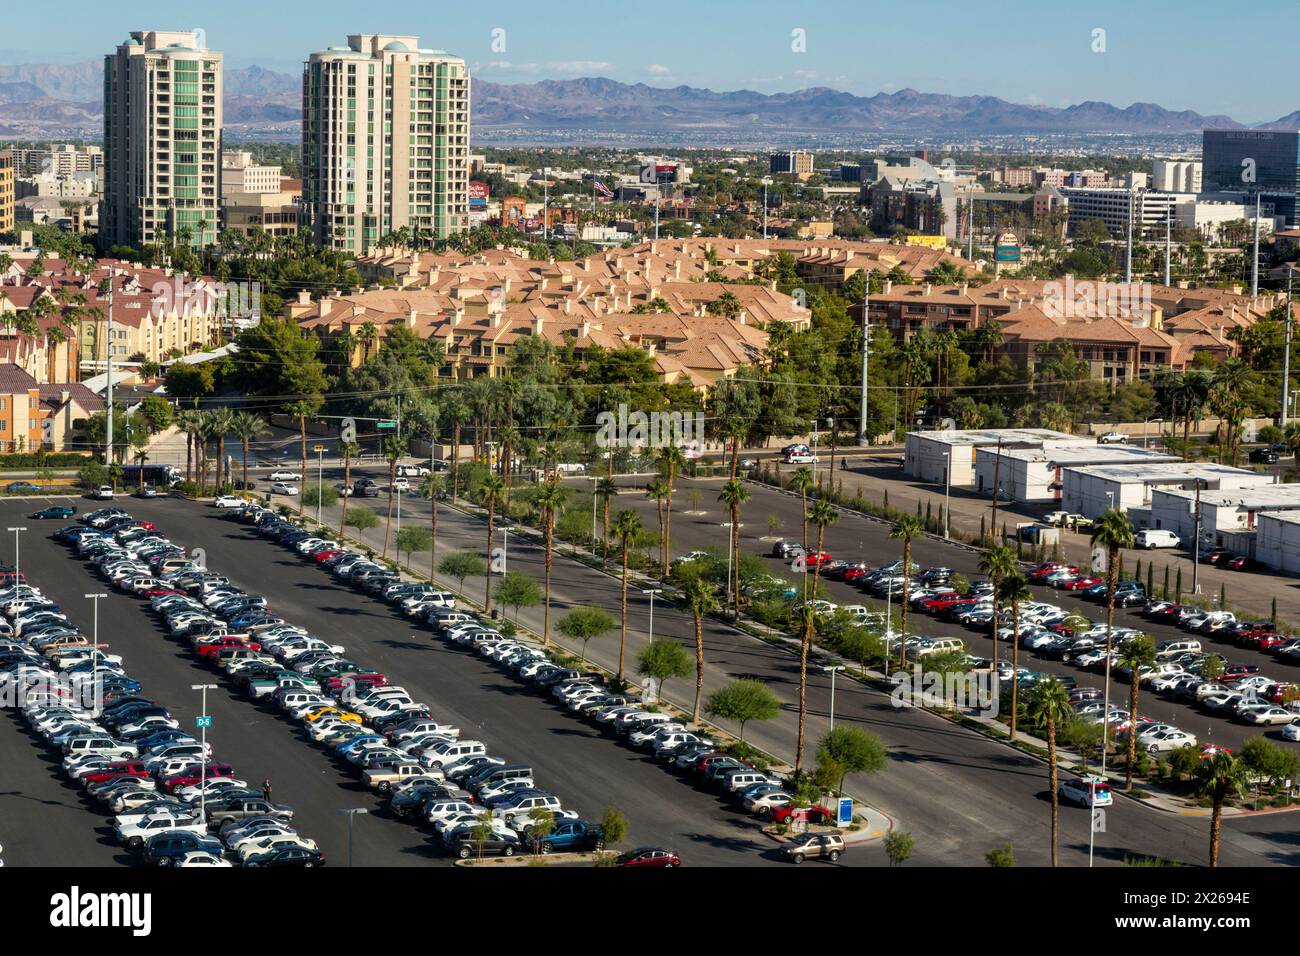 Las Vegas, Nevada. Vue sur le développement urbain et la vallée de Las Vegas depuis le High Roller, la plus haute roue d'observation du monde en 2015. Banque D'Images